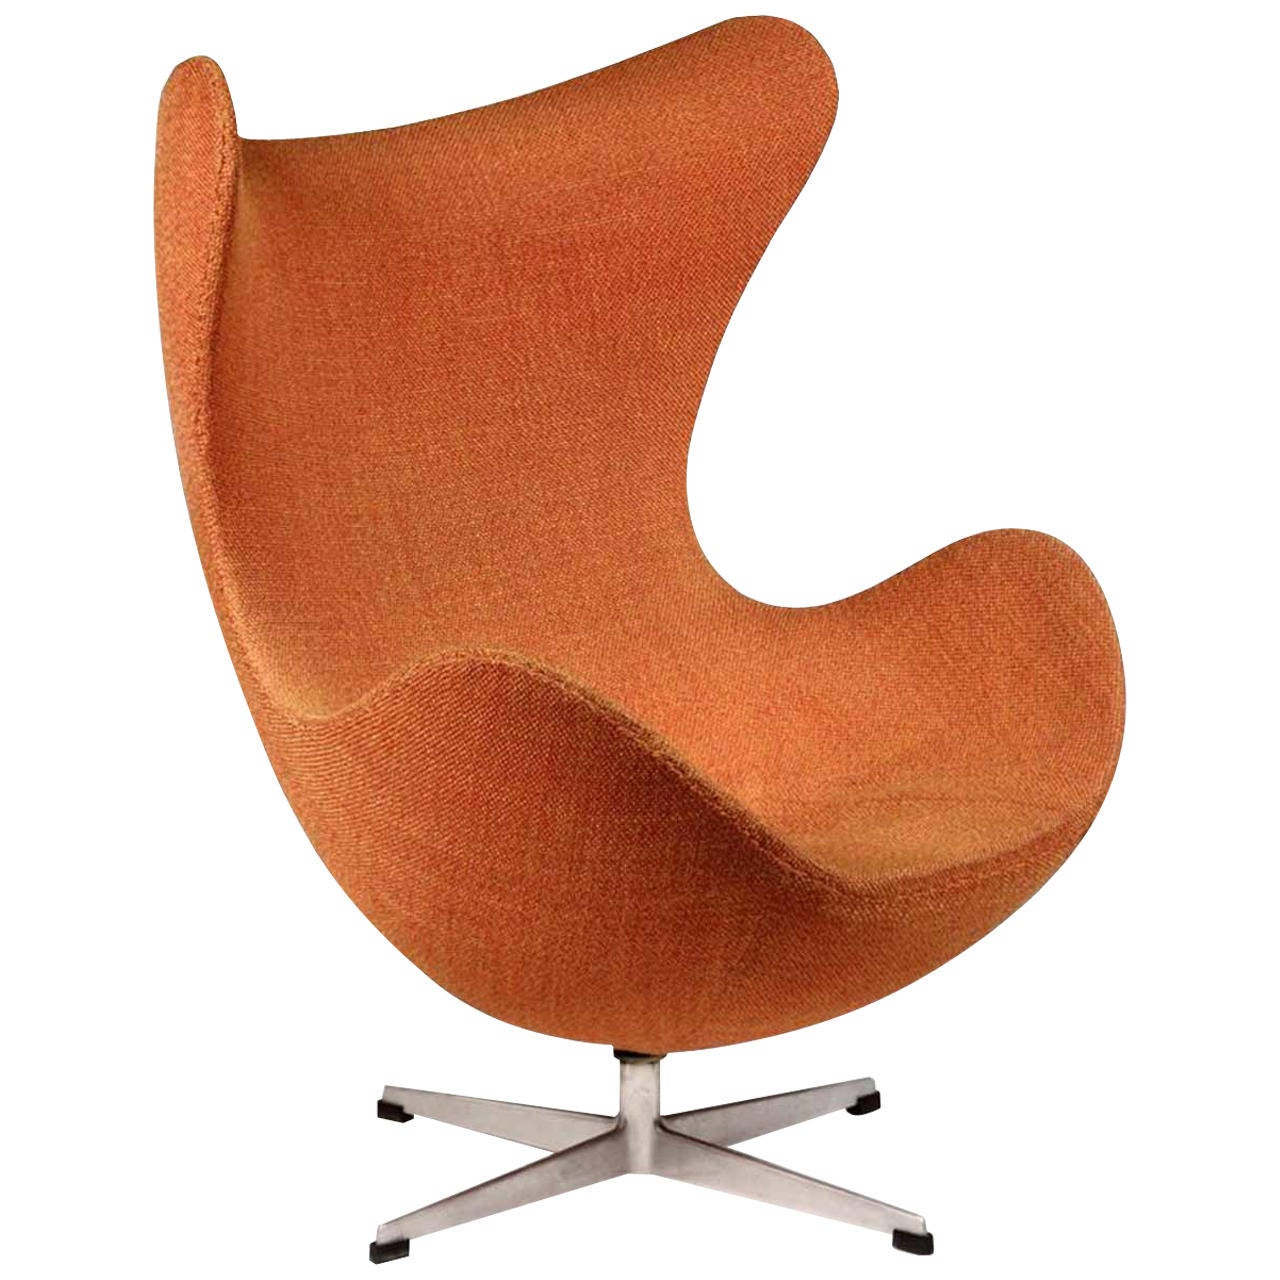 New Arne Jacobsen Egg Chair For Sale for Living room